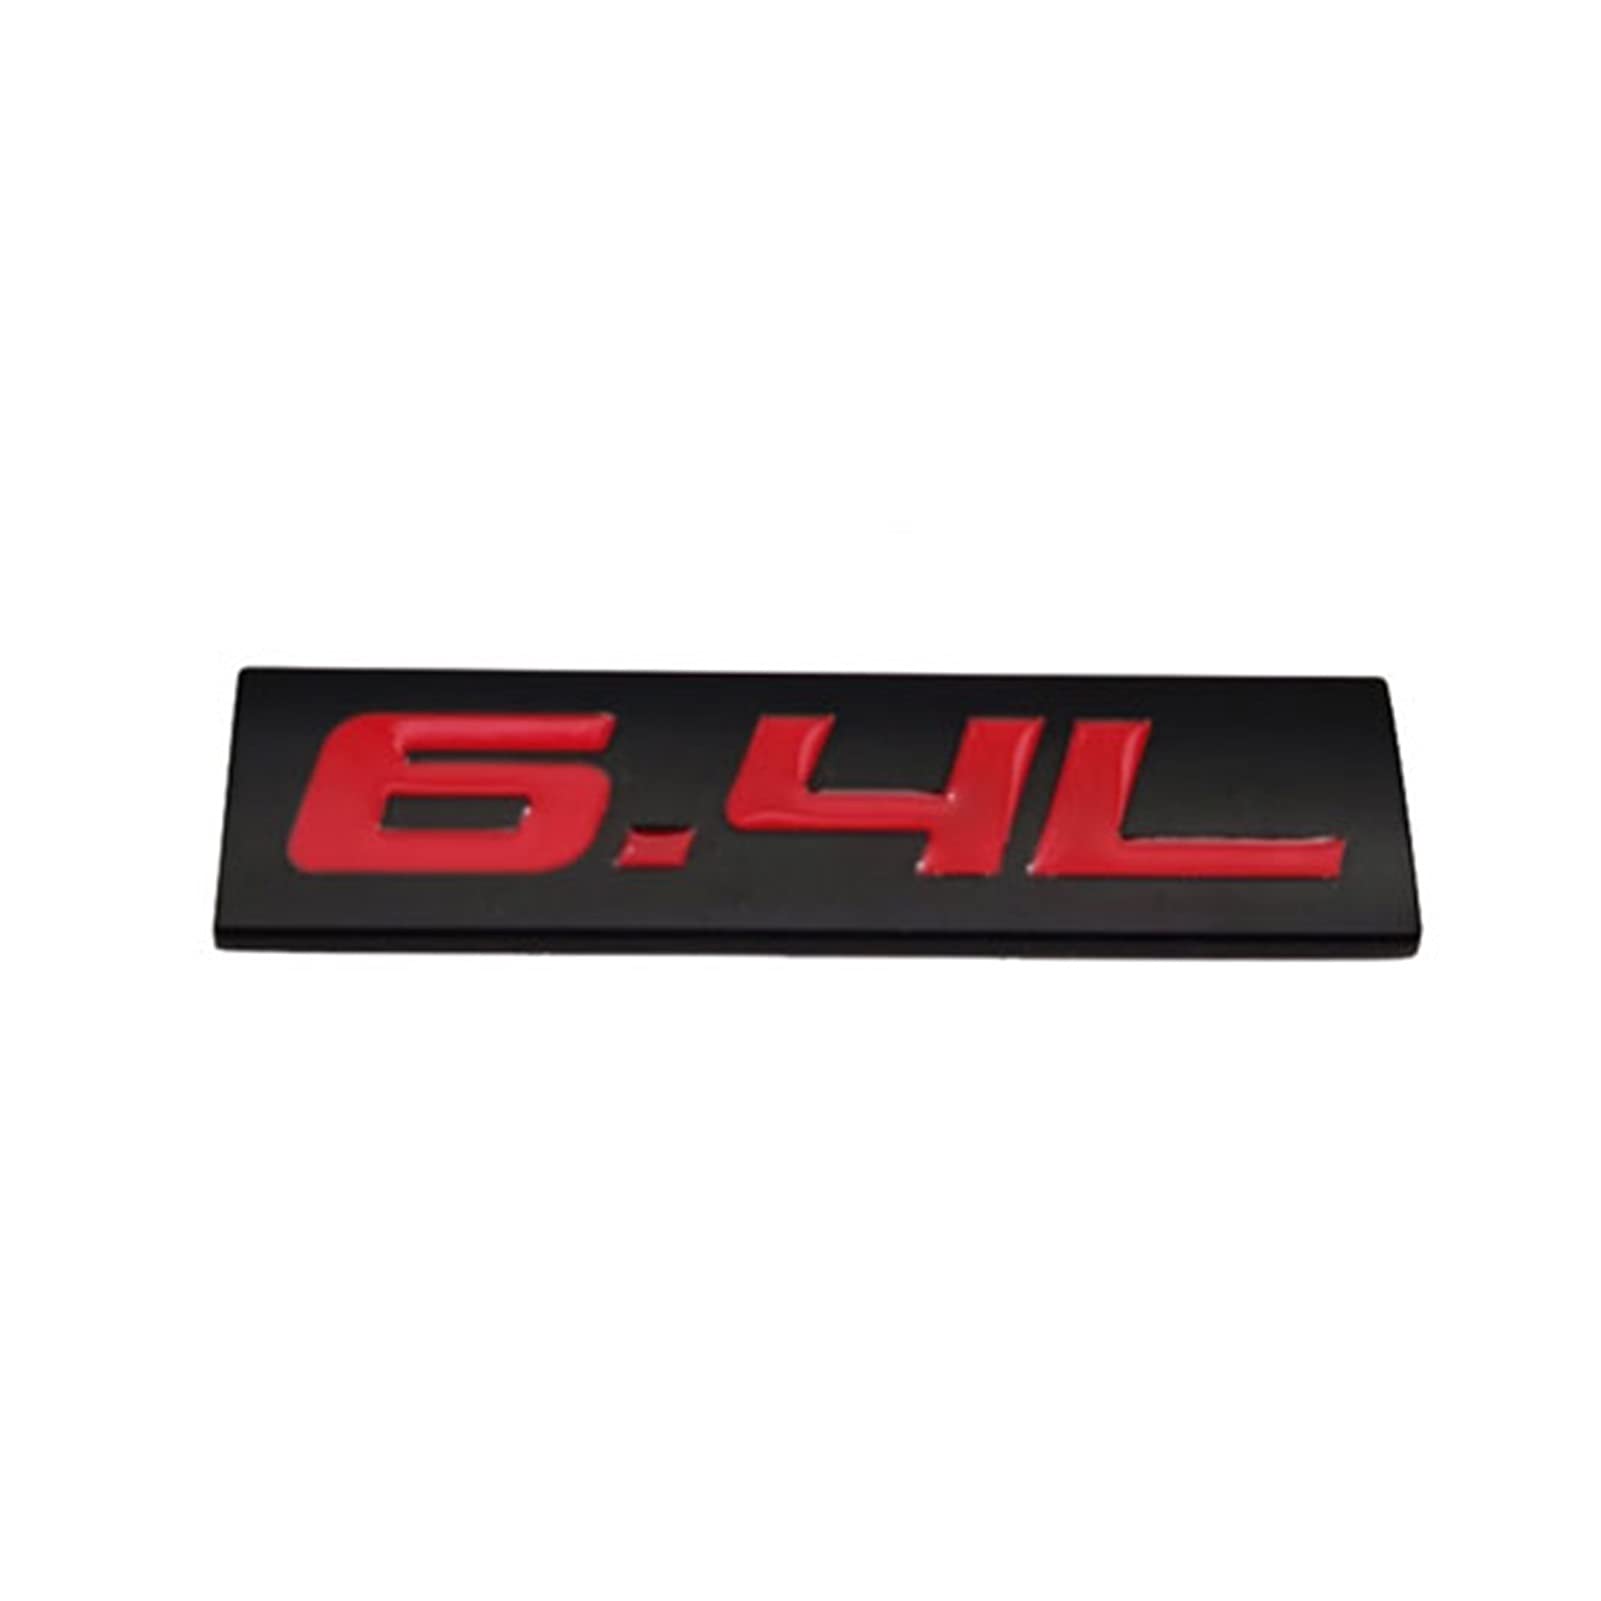 LAZIRO Metallauto Styling 6.4L Logo Emblem Flügelseite Auto Abzeichen Trunk Aufkleber Aufkleber Zubehör (Color : Black with Red) von LAZIRO